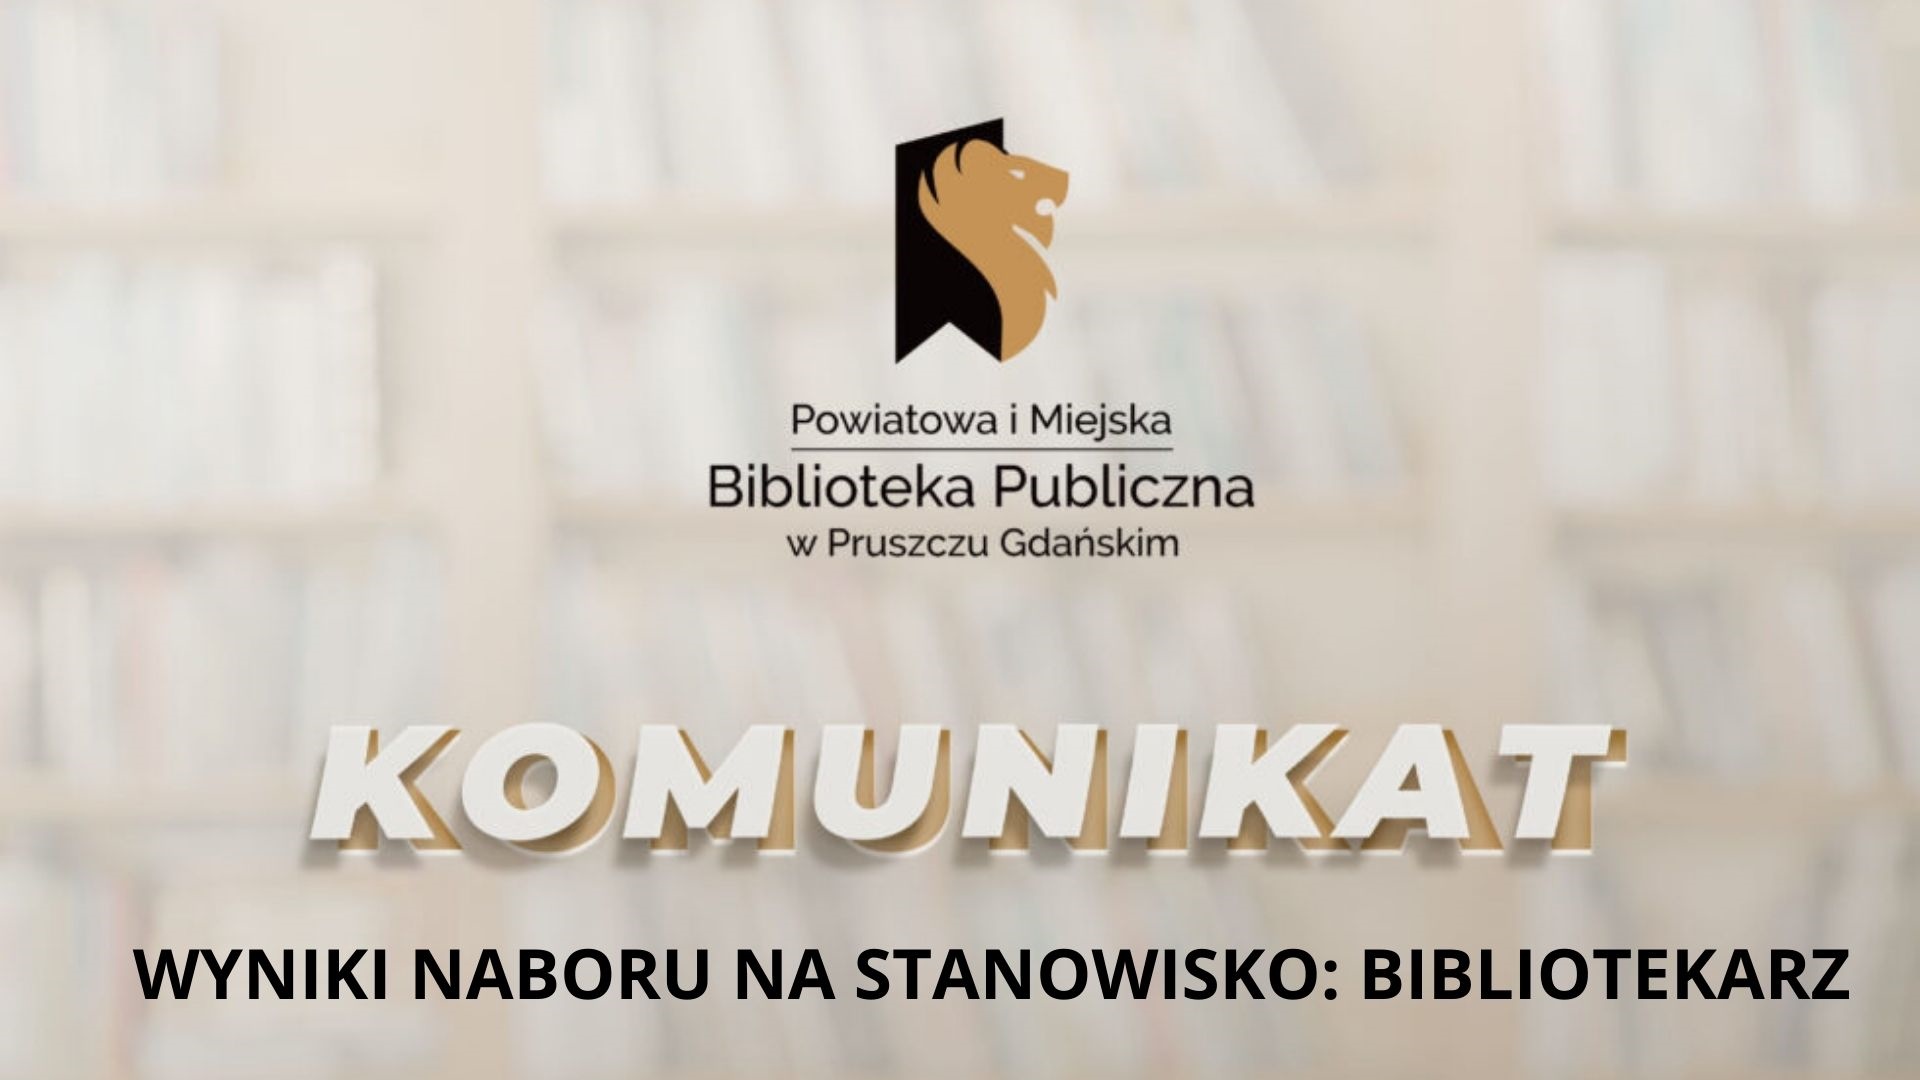 Grafika promocyjna zawierająca logo oraz napisy: Powiatowa i Miejska Biblioteka Publiczna w Pruszczu Gdańskim, wyniki naboru na stanowisko: bibliotekarz.